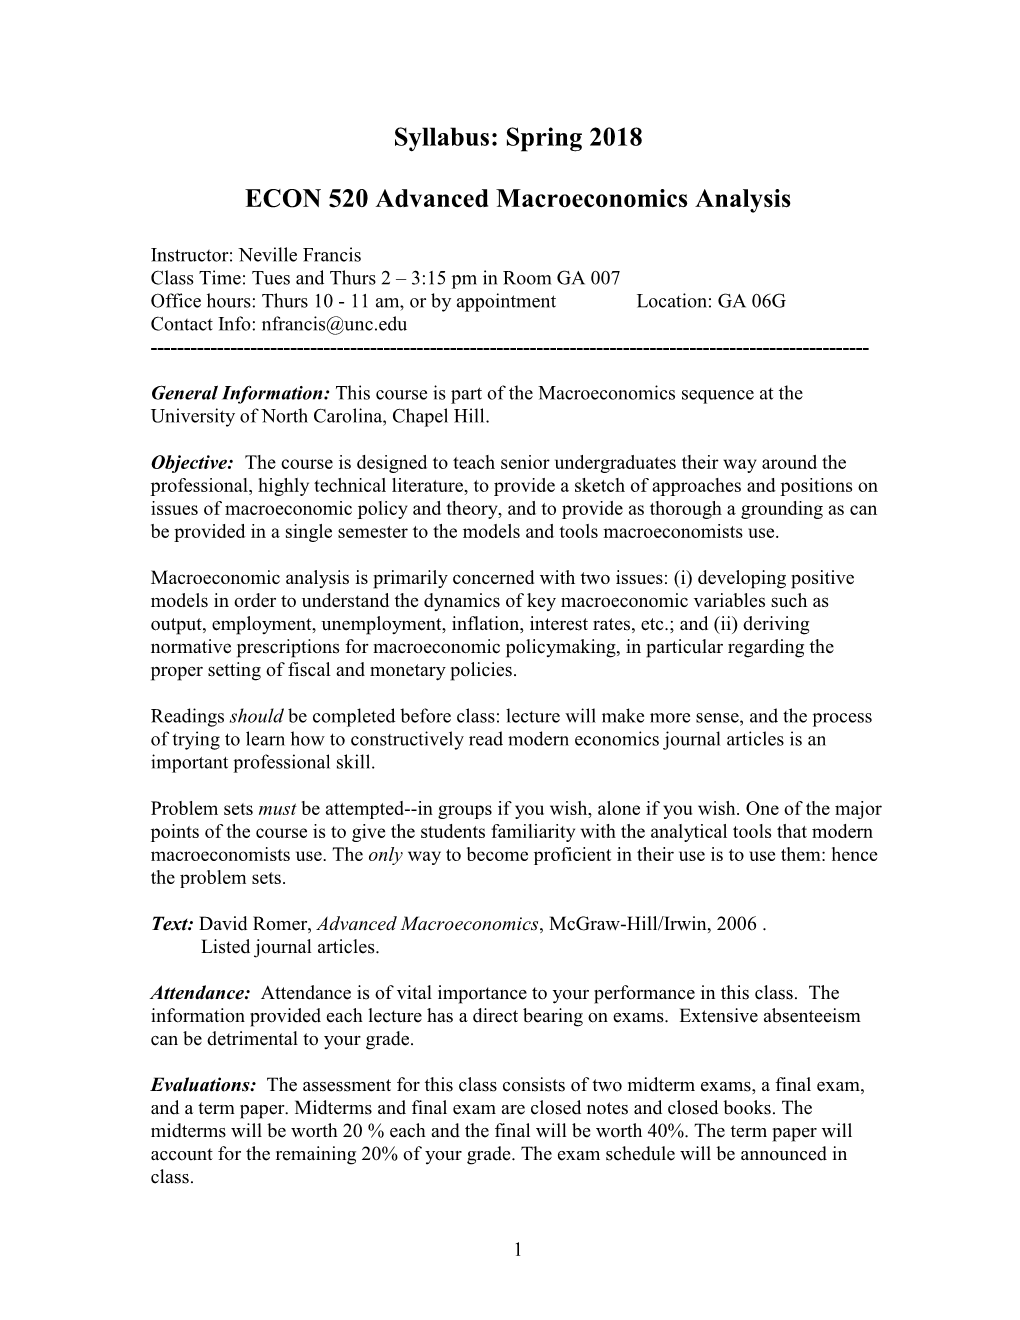 Syllabus: Spring 2018 ECON 520 Advanced Macroeconomics Analysis